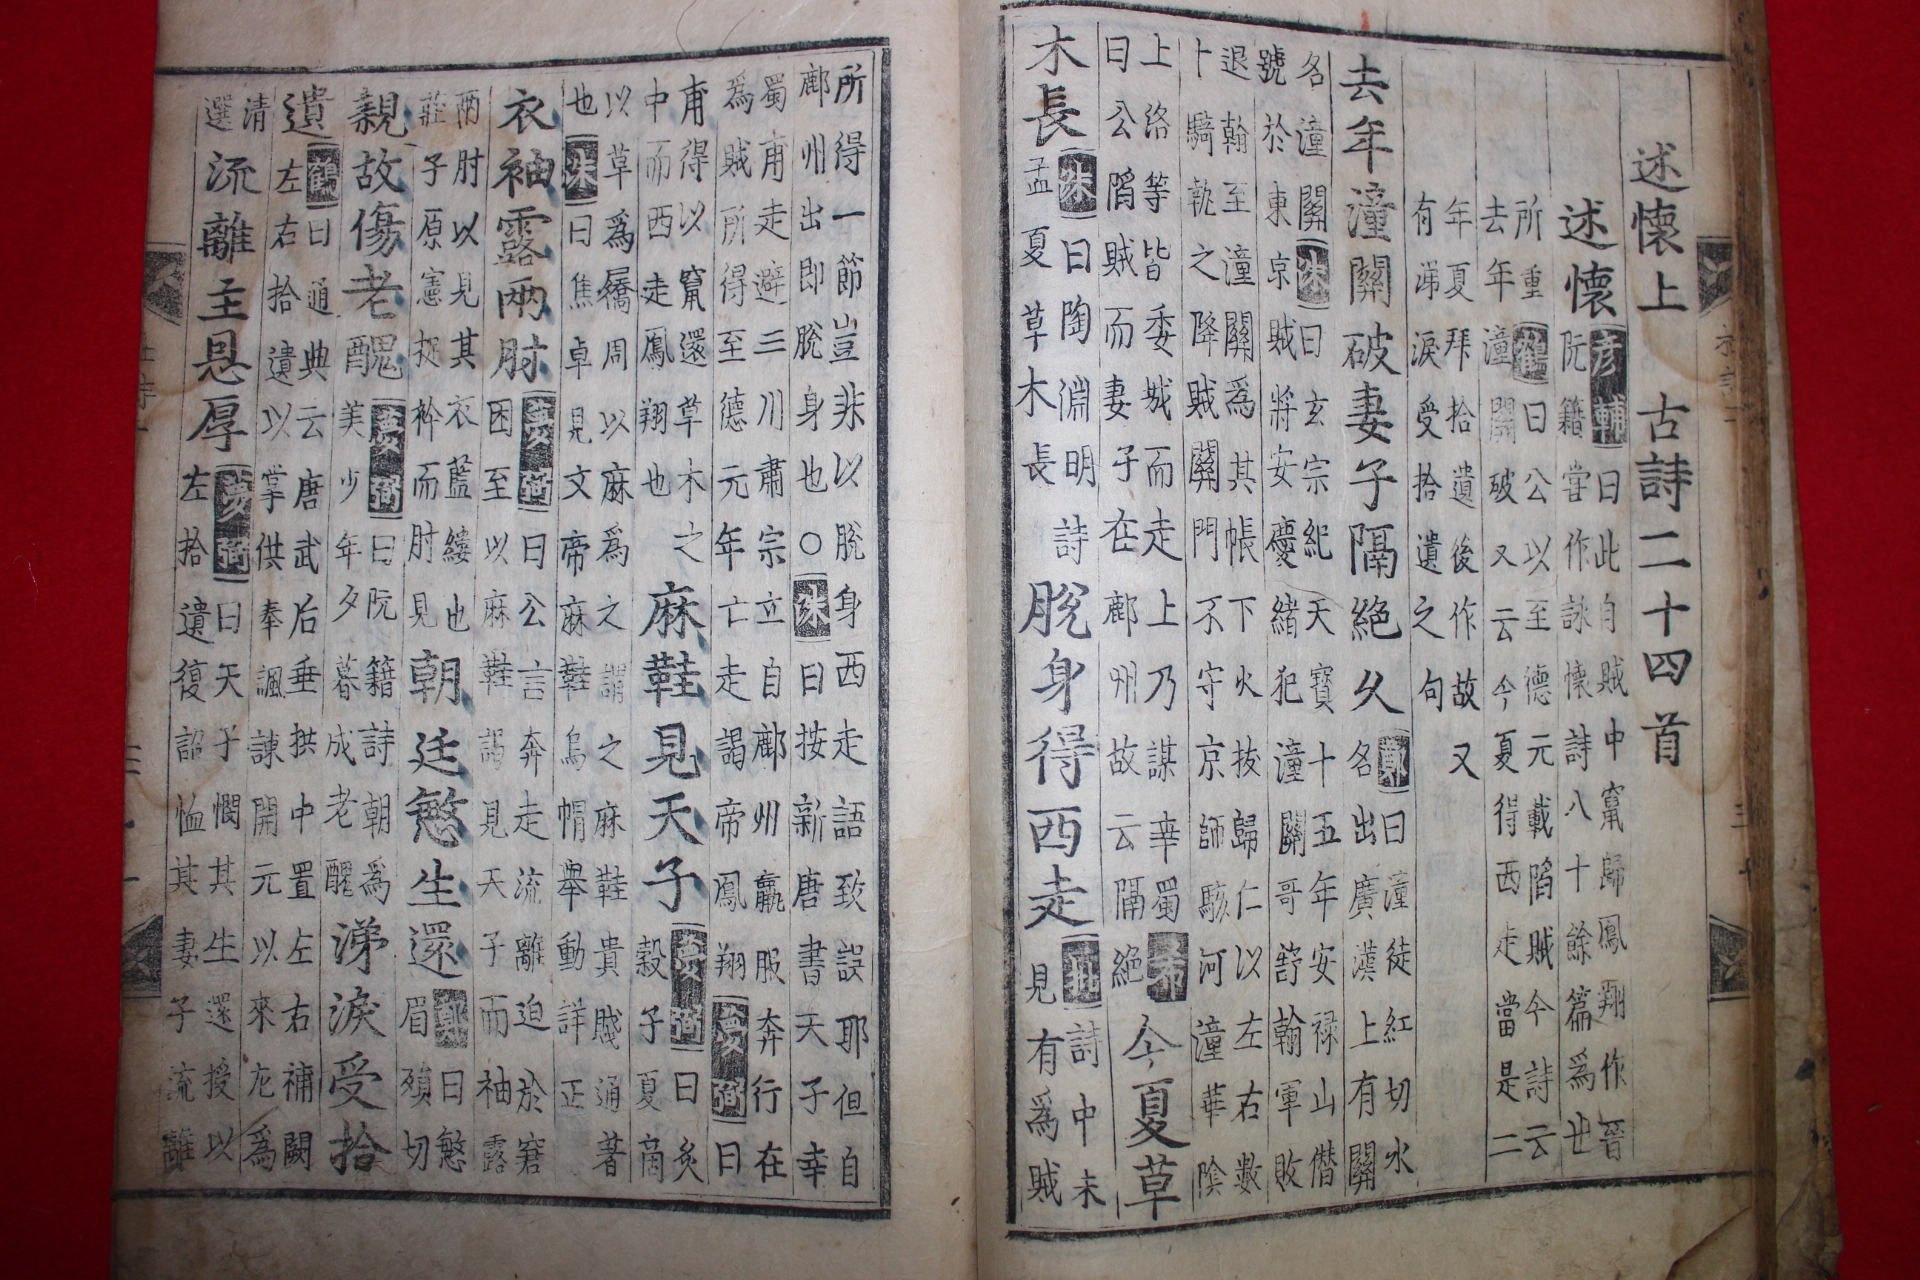 1500년대 금속활자본(초주갑인자) 두보(杜甫) 찬주분류두시(纂註分類杜詩)권2  1책